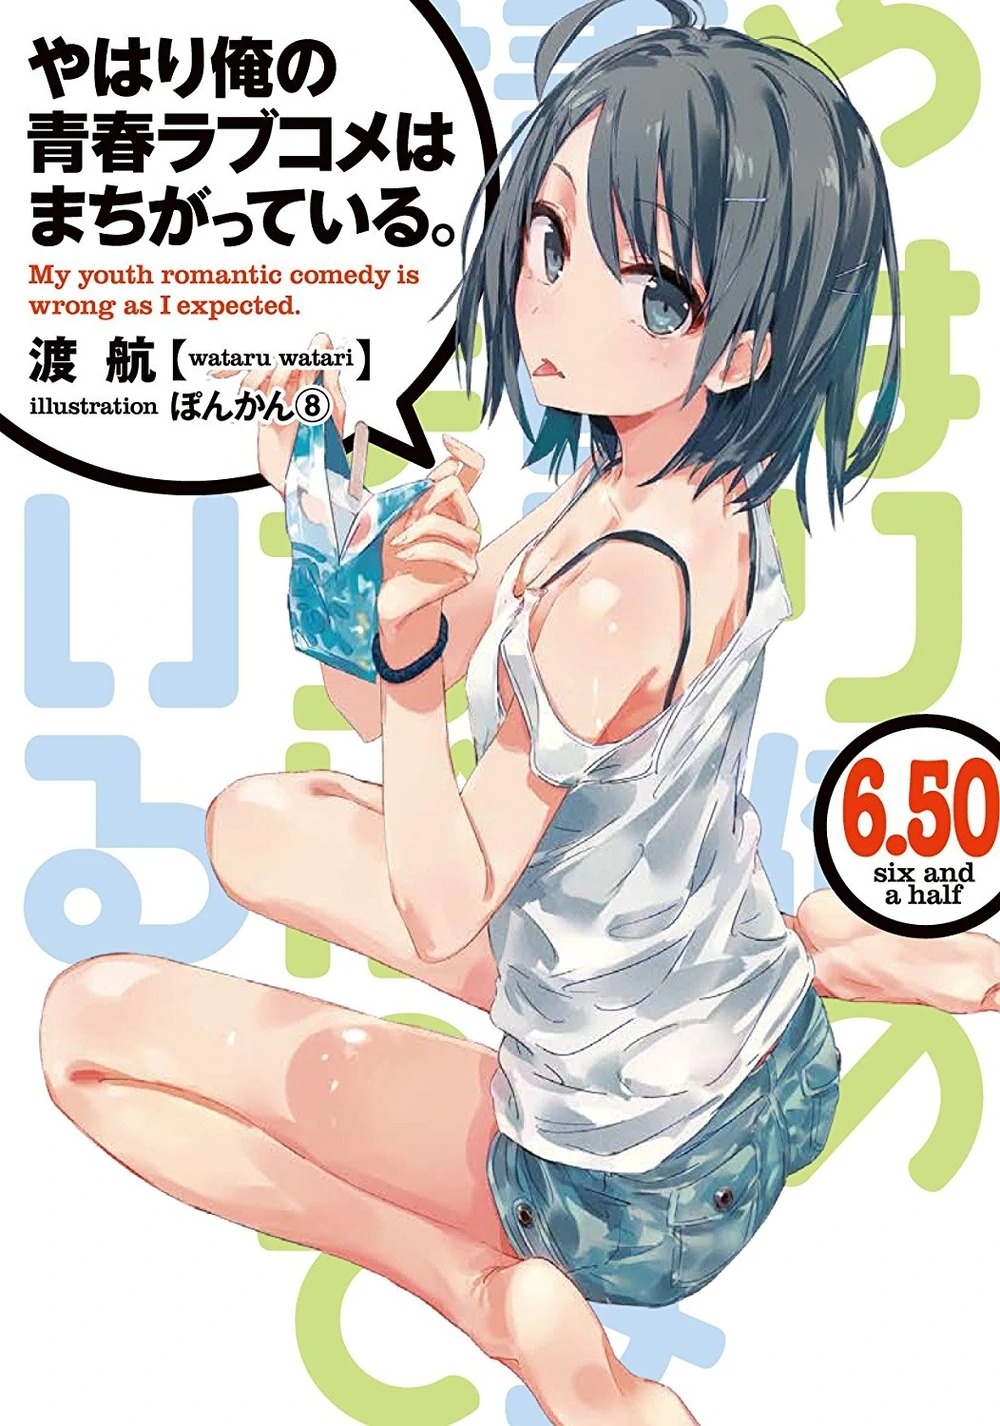 [light novel] yahari ore no seishun love come wa machigatteiru illust compliation 83